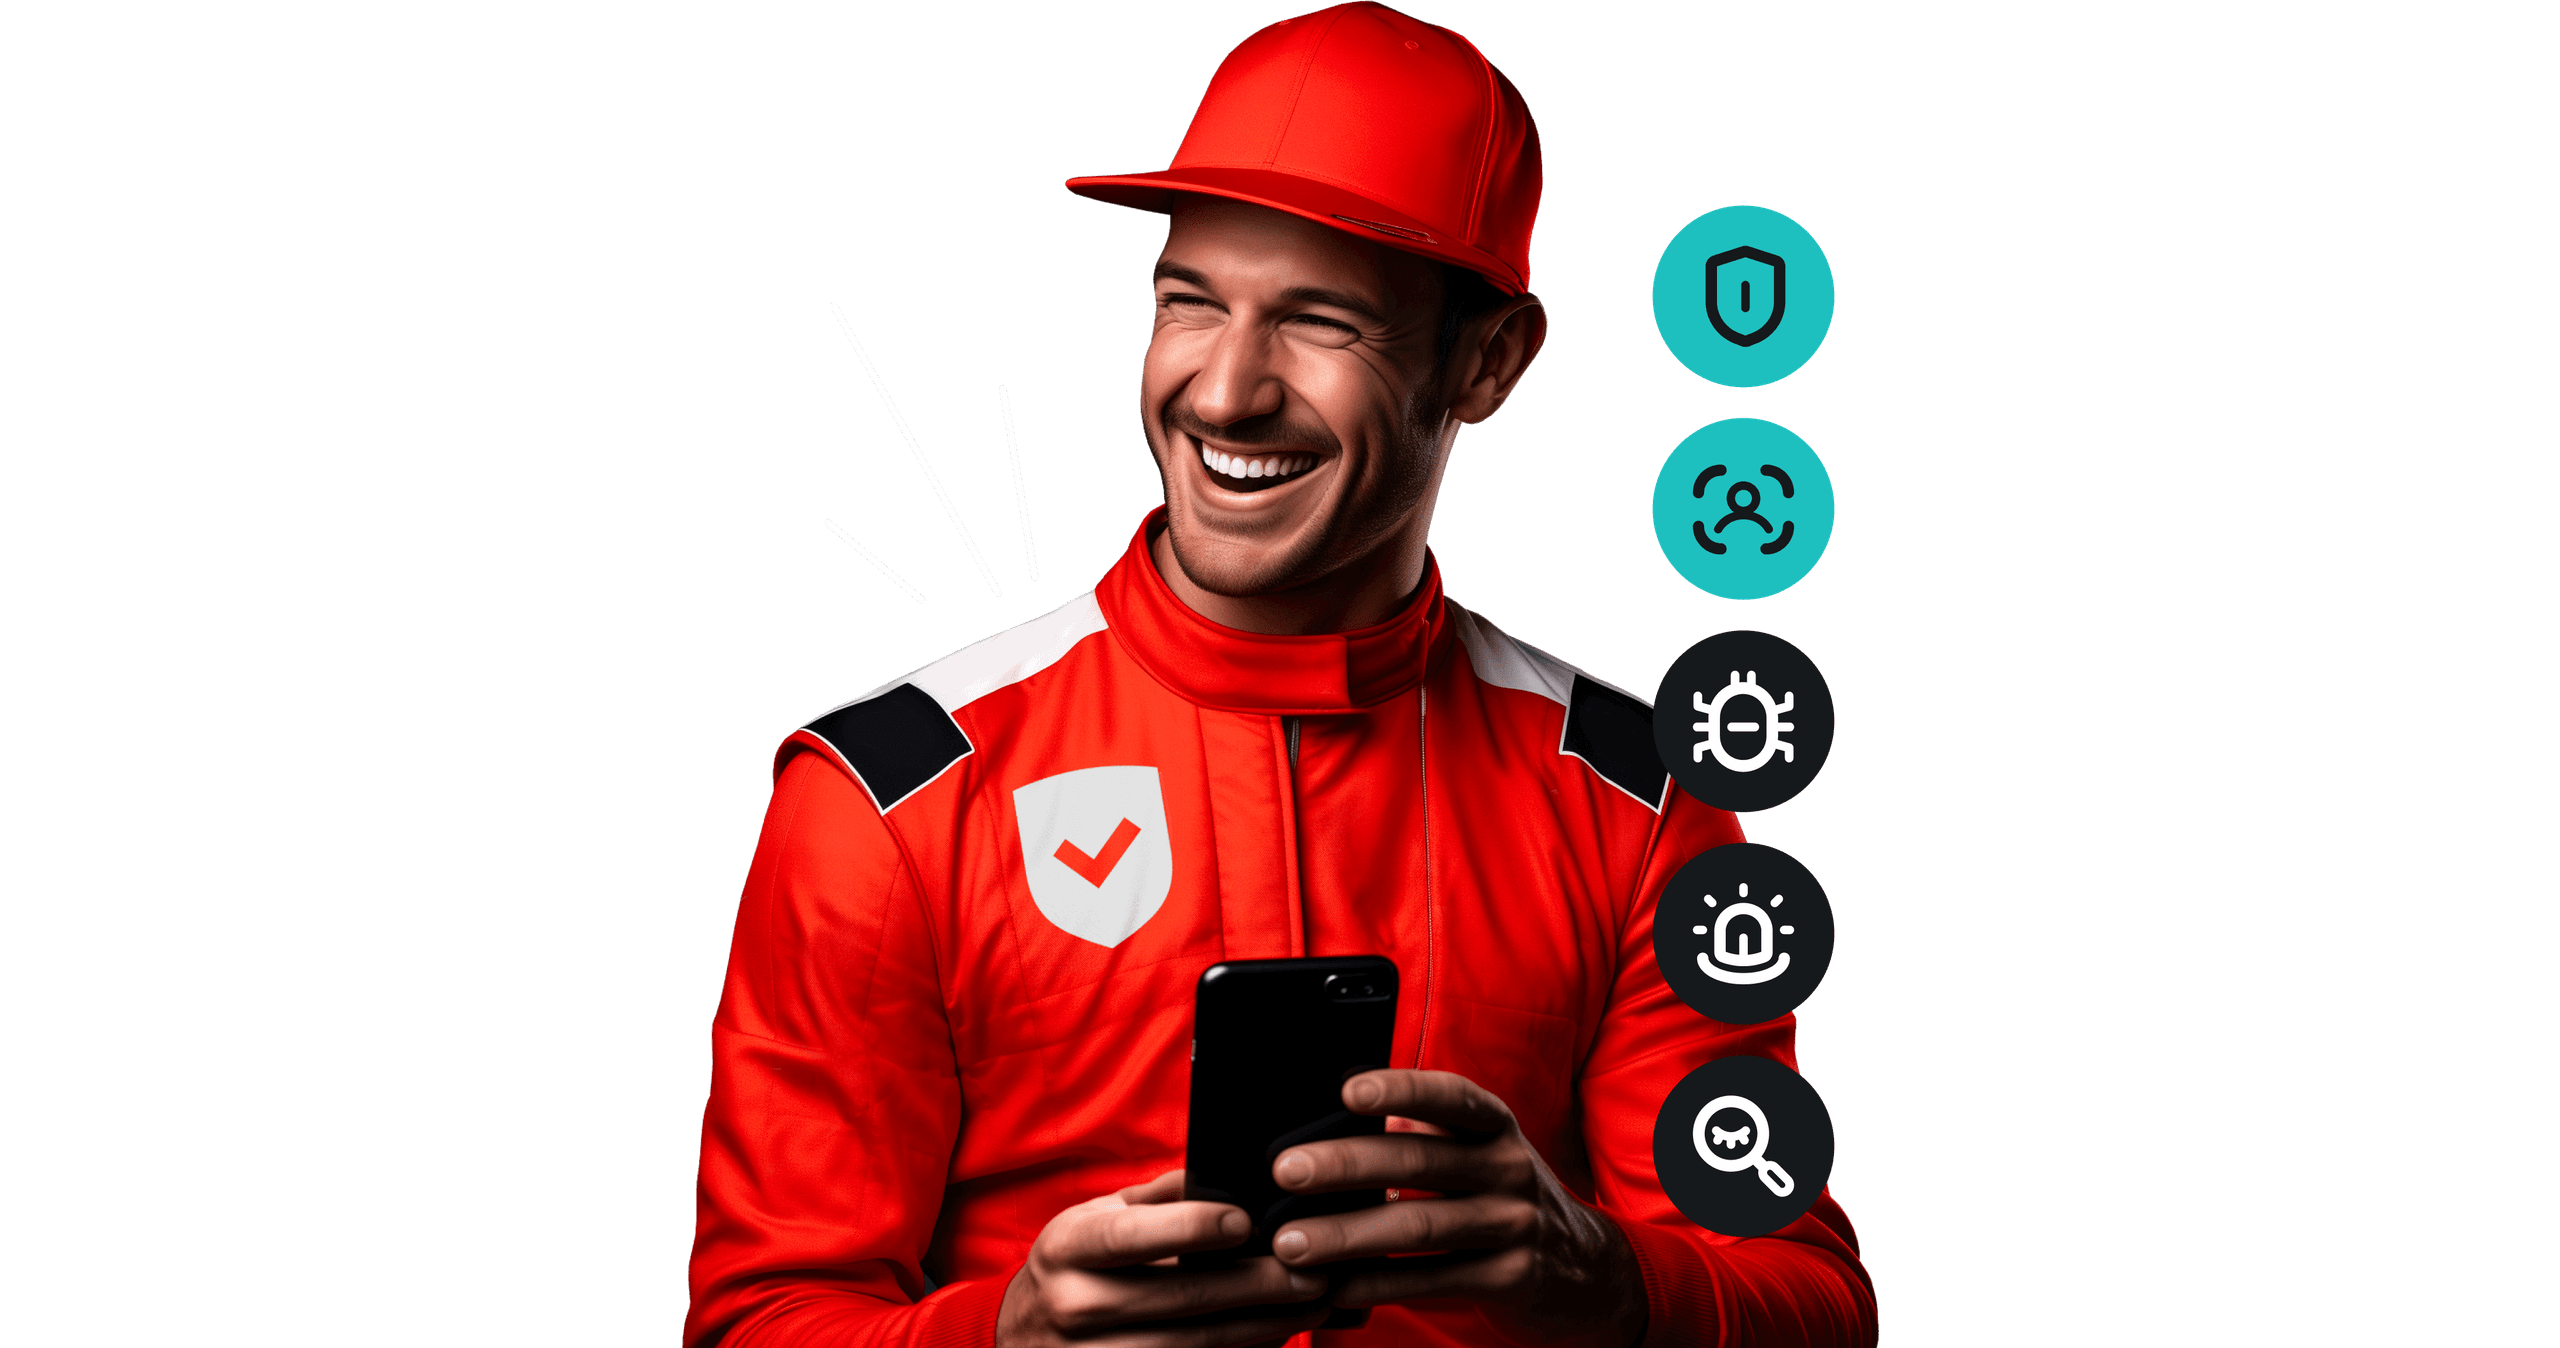 Der Rennfahrer mit Schild und Sicherheitshäkchen auf seinem Rennanzug hält lächelnd ein Smartphone in der Hand.